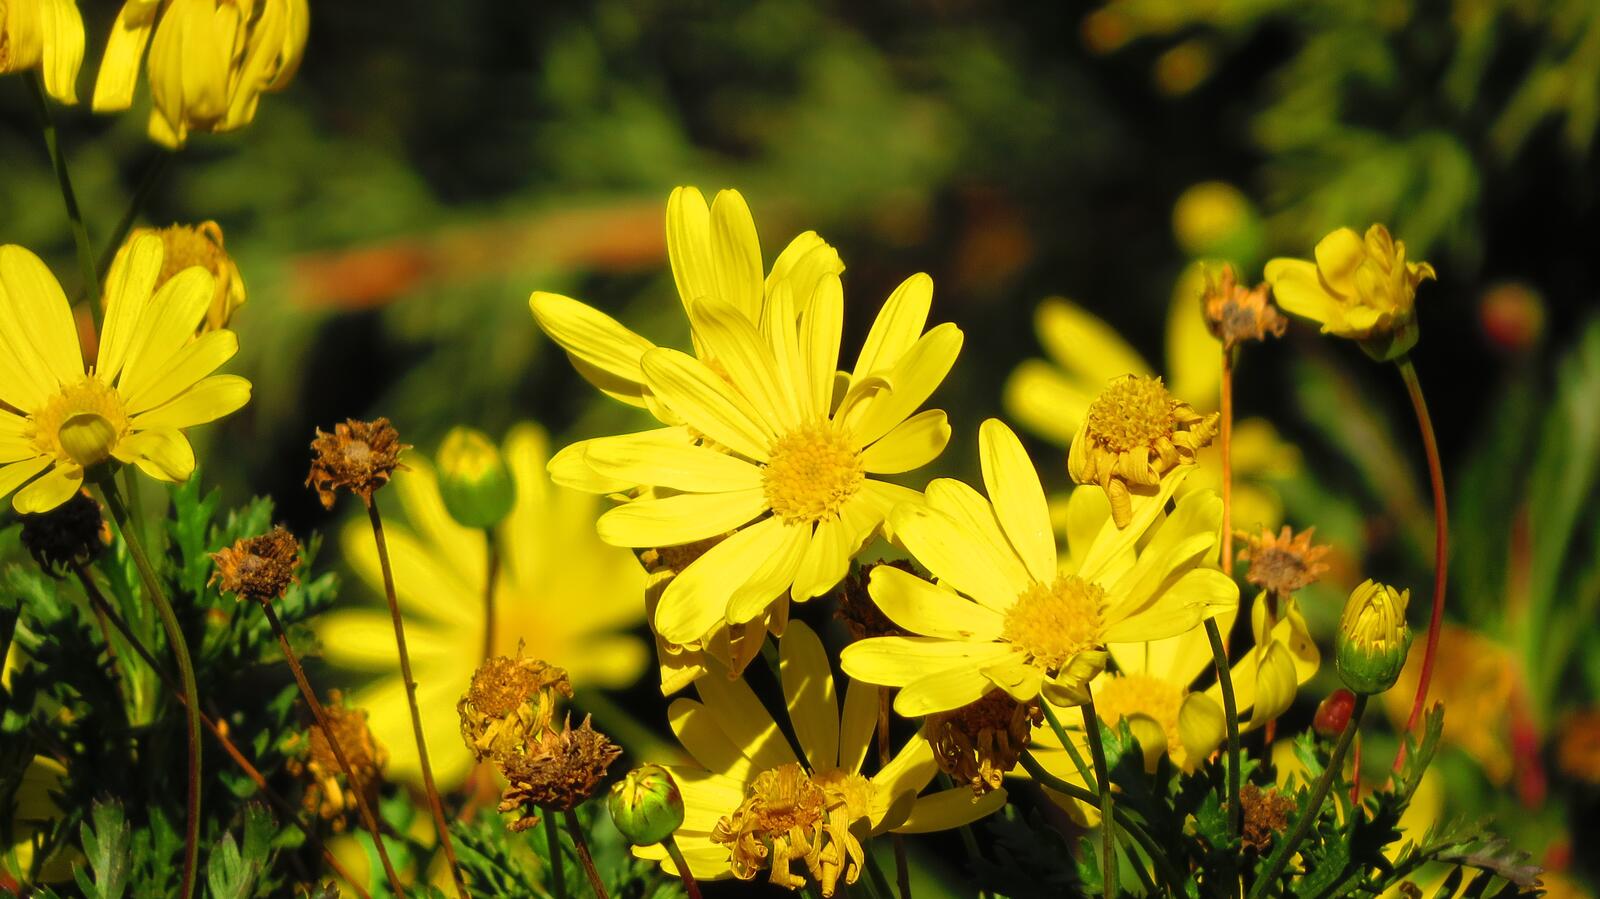 Бесплатное фото Желтые цветочки в зеленой траве